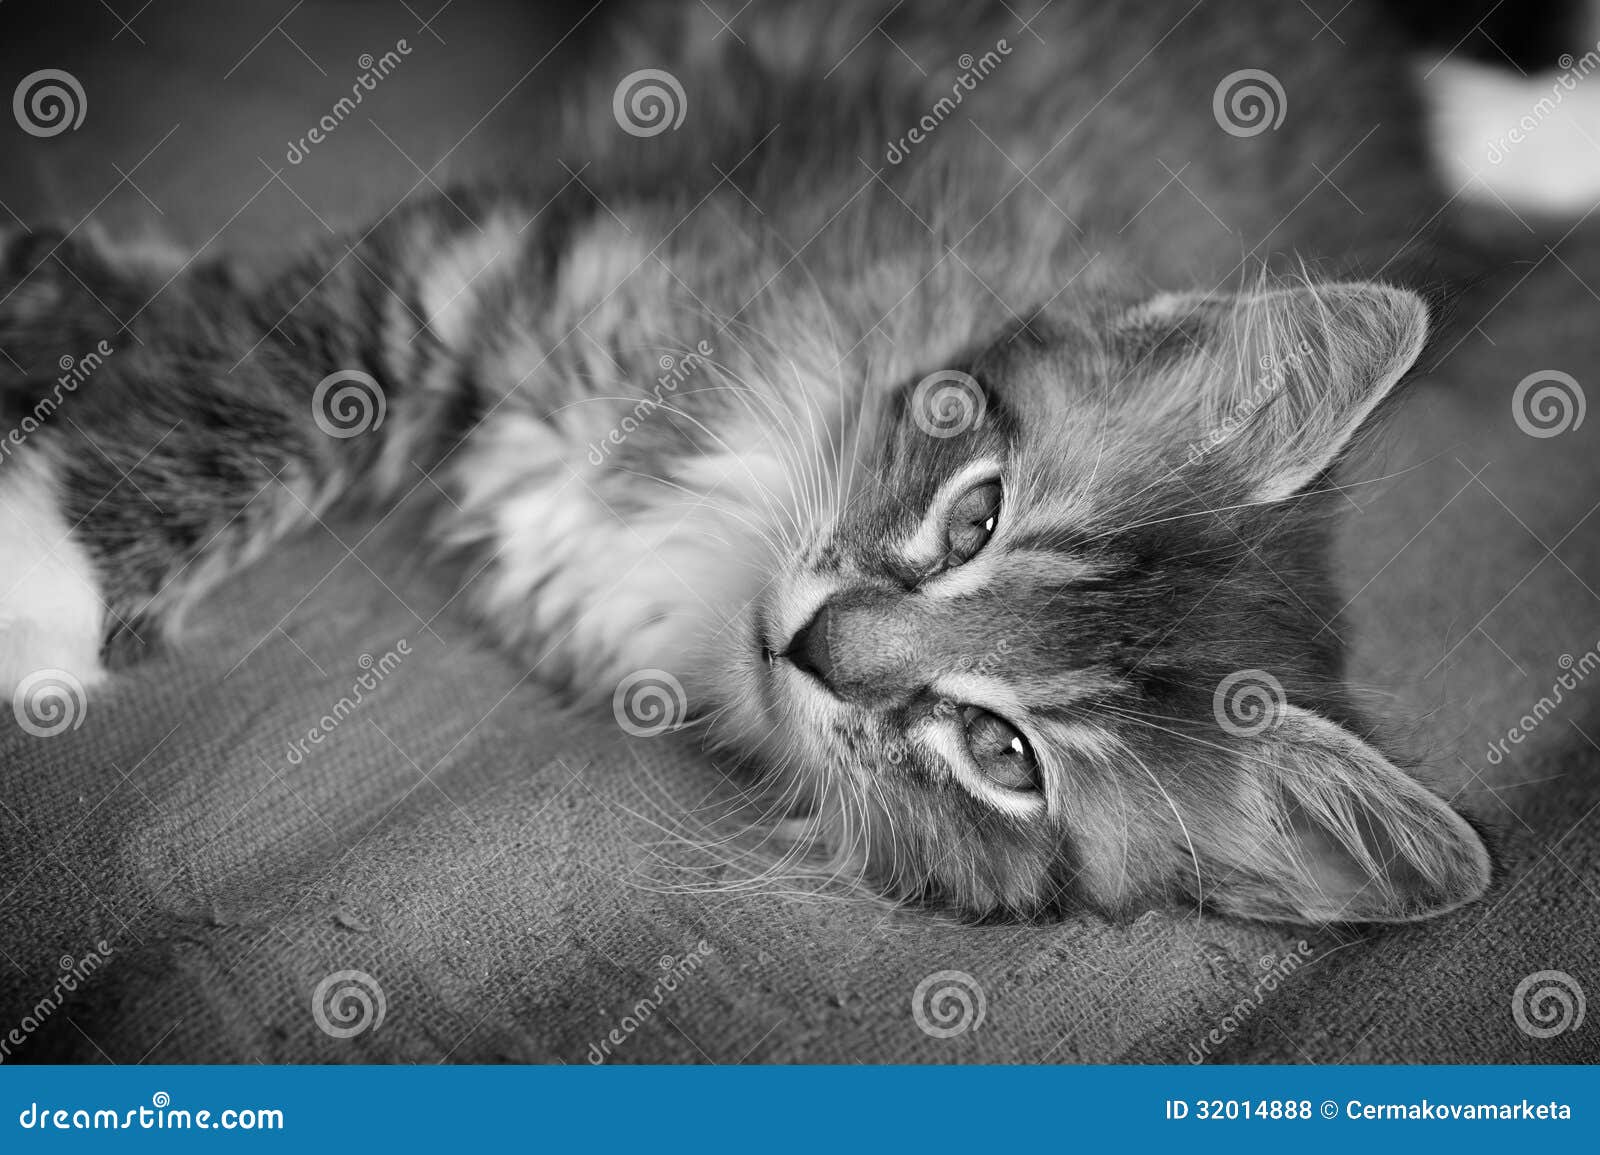 Hairy Kitten 19